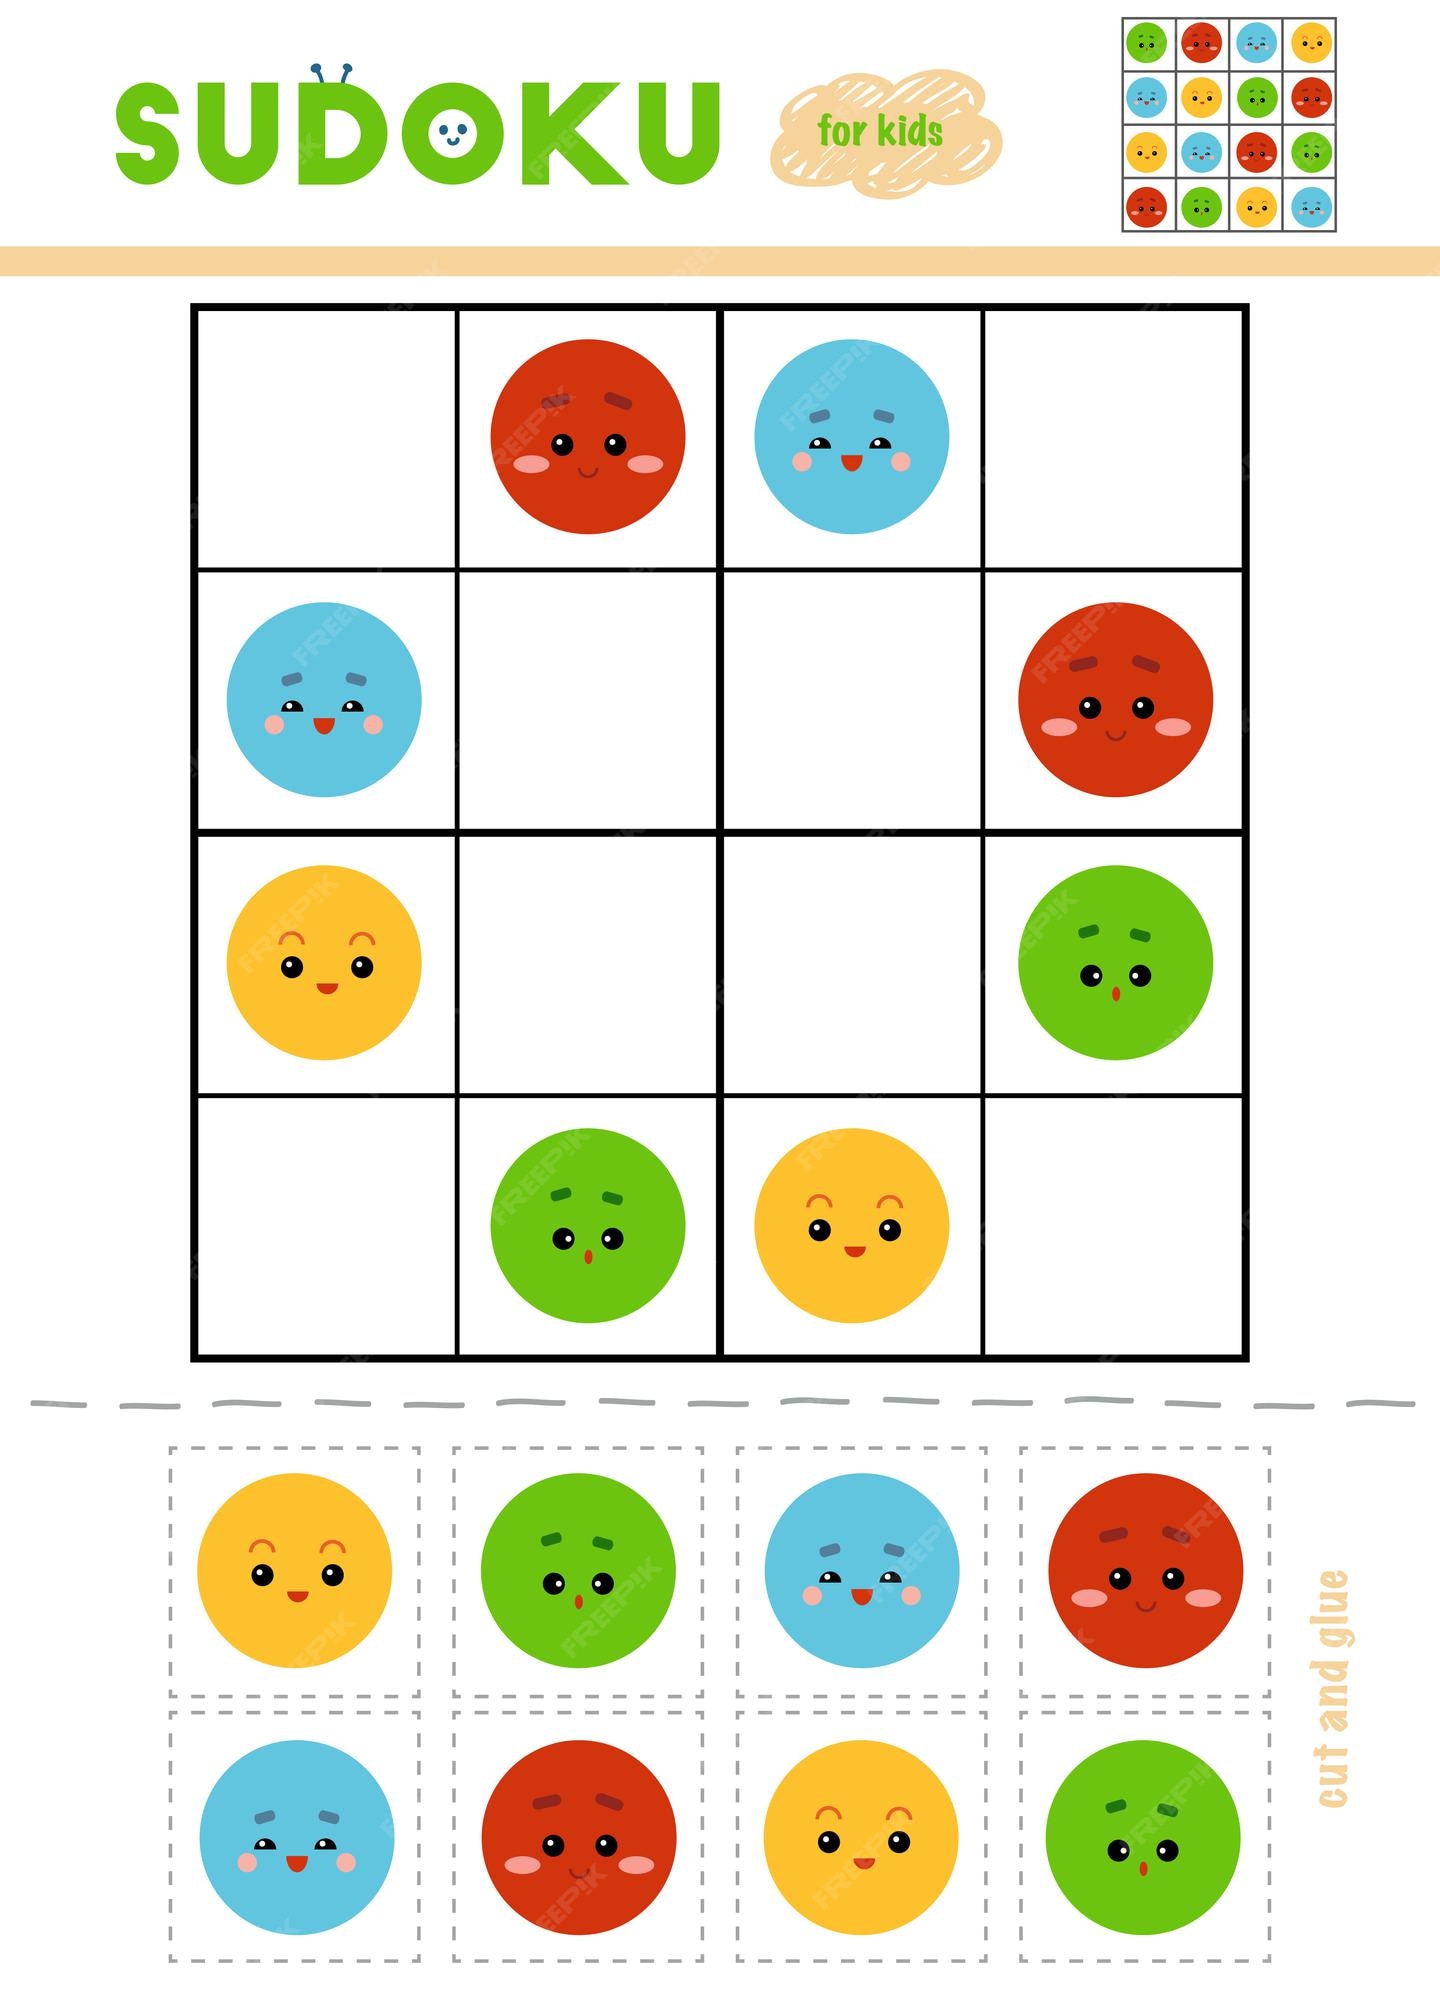 Sudoku para jogo de educação infantil conjunto de cores use tesoura e cola  para preencher os elementos que faltam